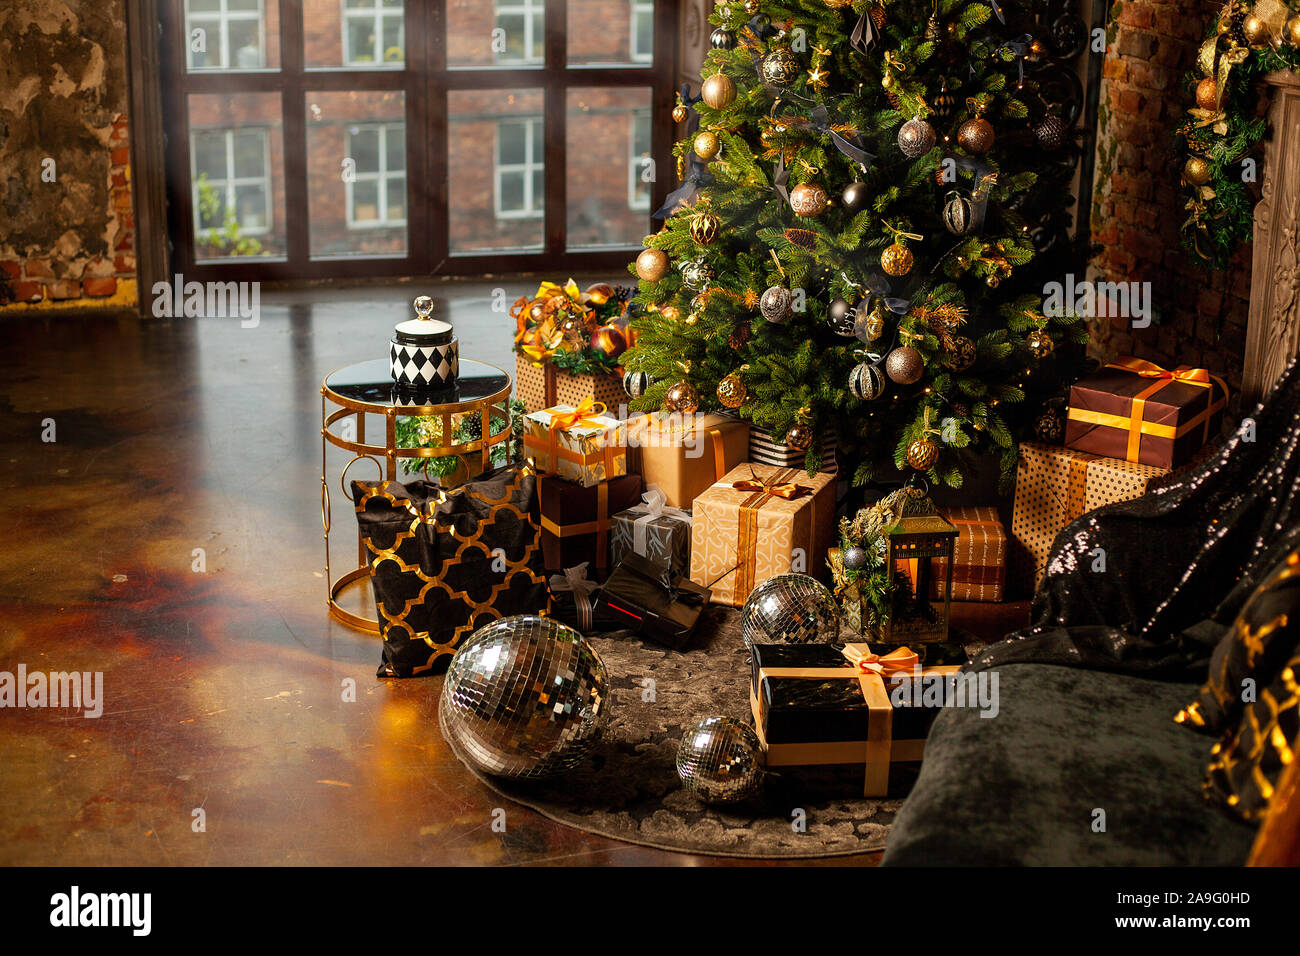 In der Nähe eines Weihnachtsbaumes mit goldenen Kugeln dekoriert. Unter dem Weihnachtsbaum eine große Anzahl der Weihnachtsgeschenke. Weihnachten Konzept. Eine riesige Stockfoto